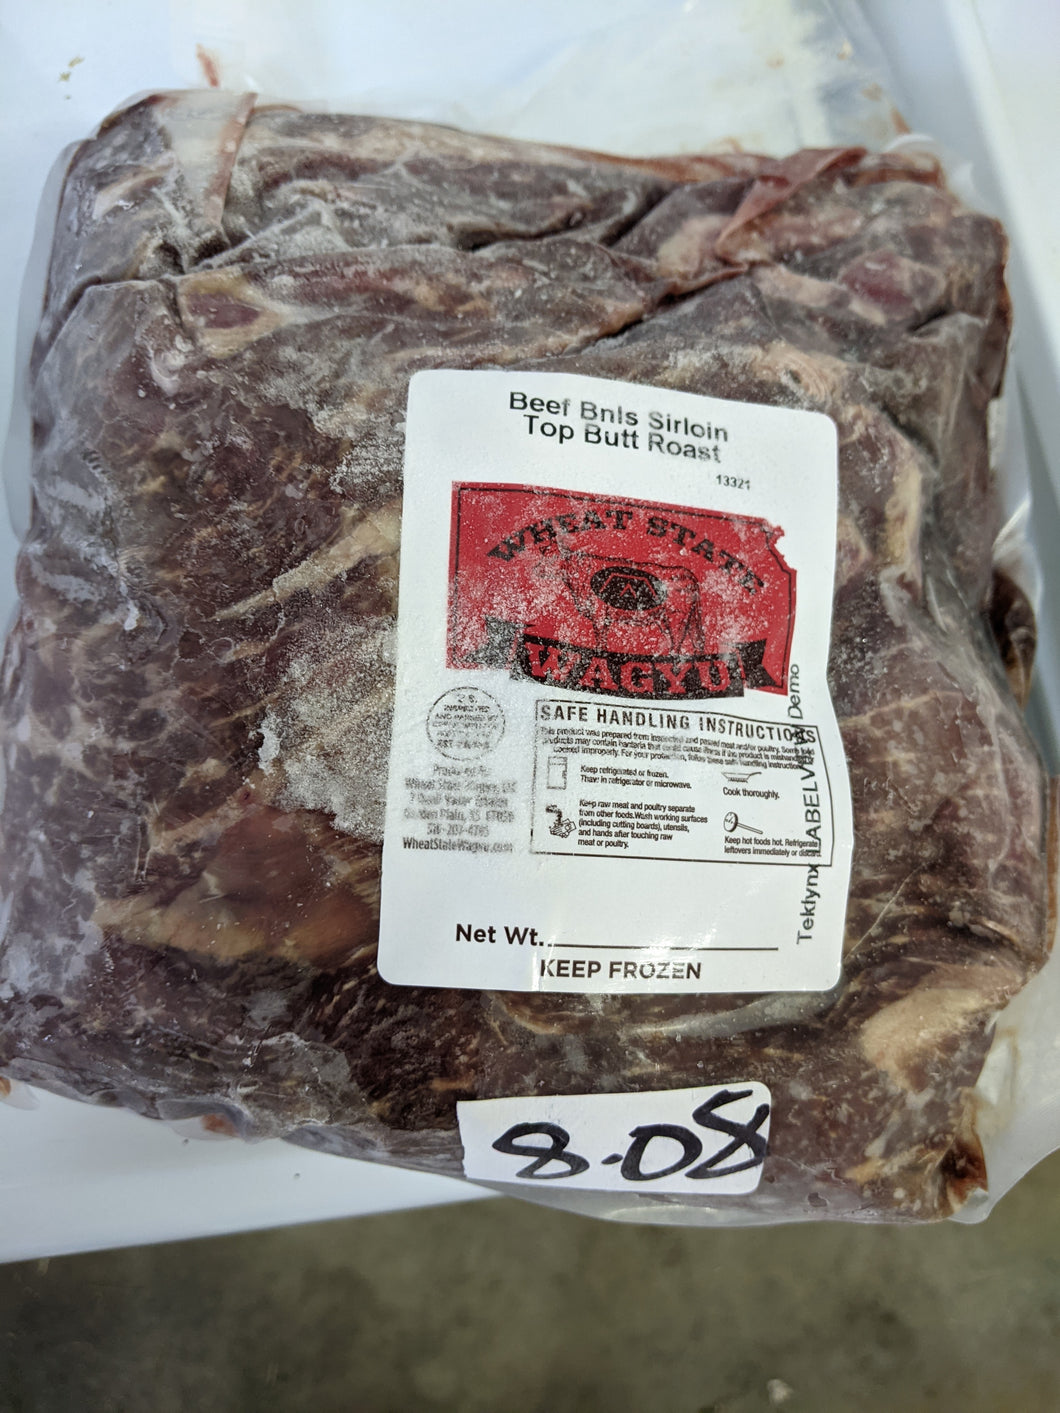 Full Blood Beef Boneless Top Butt Sirloin 9.48 pounds